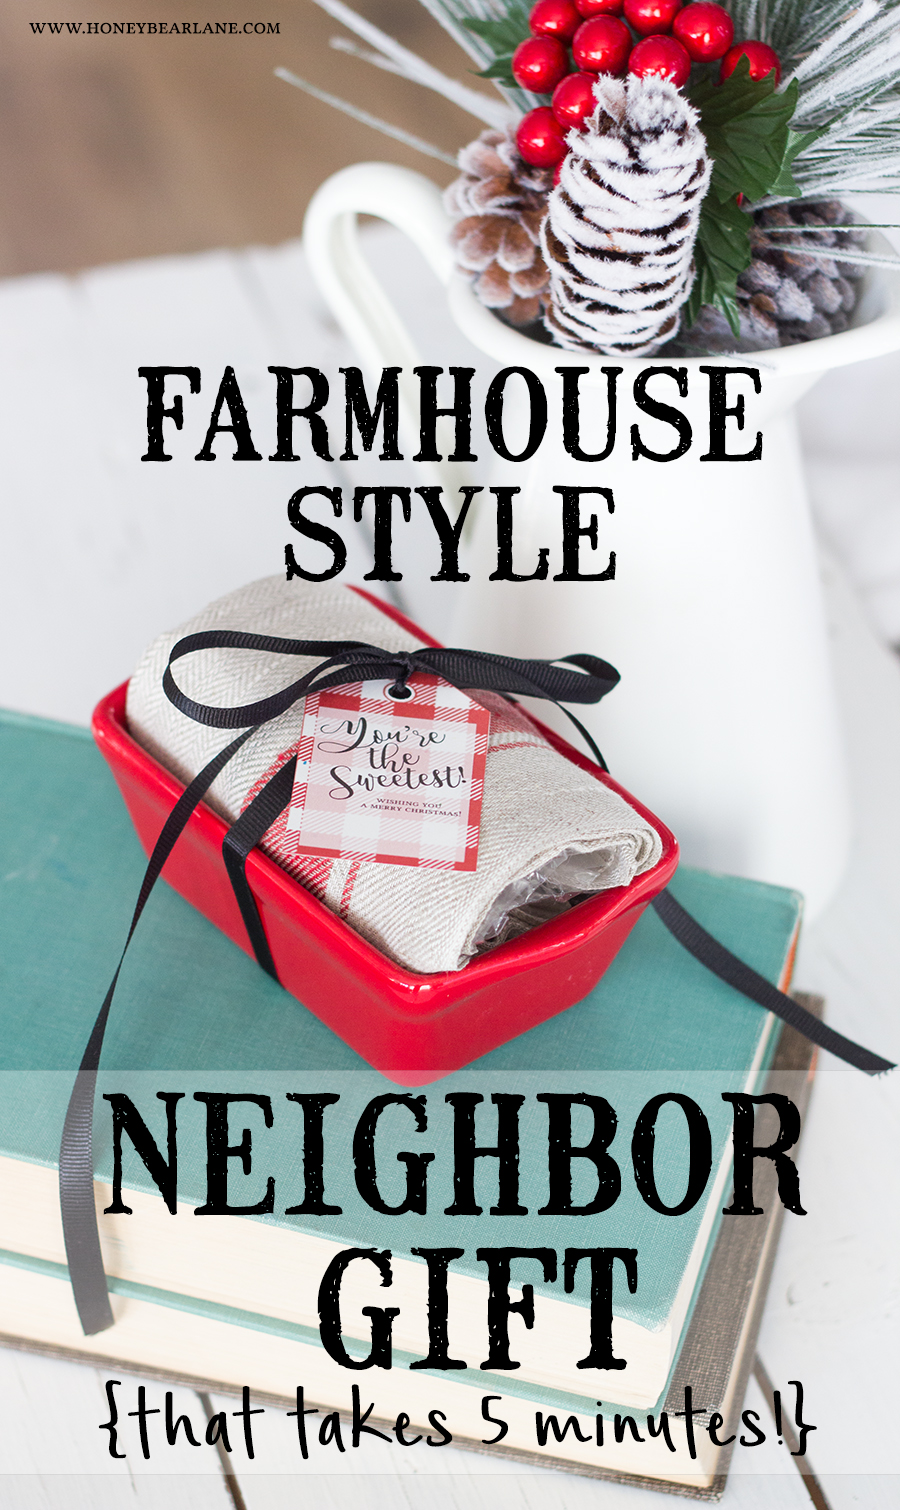 Easy Neighbor Christmas Gifts with Free Printable Tags